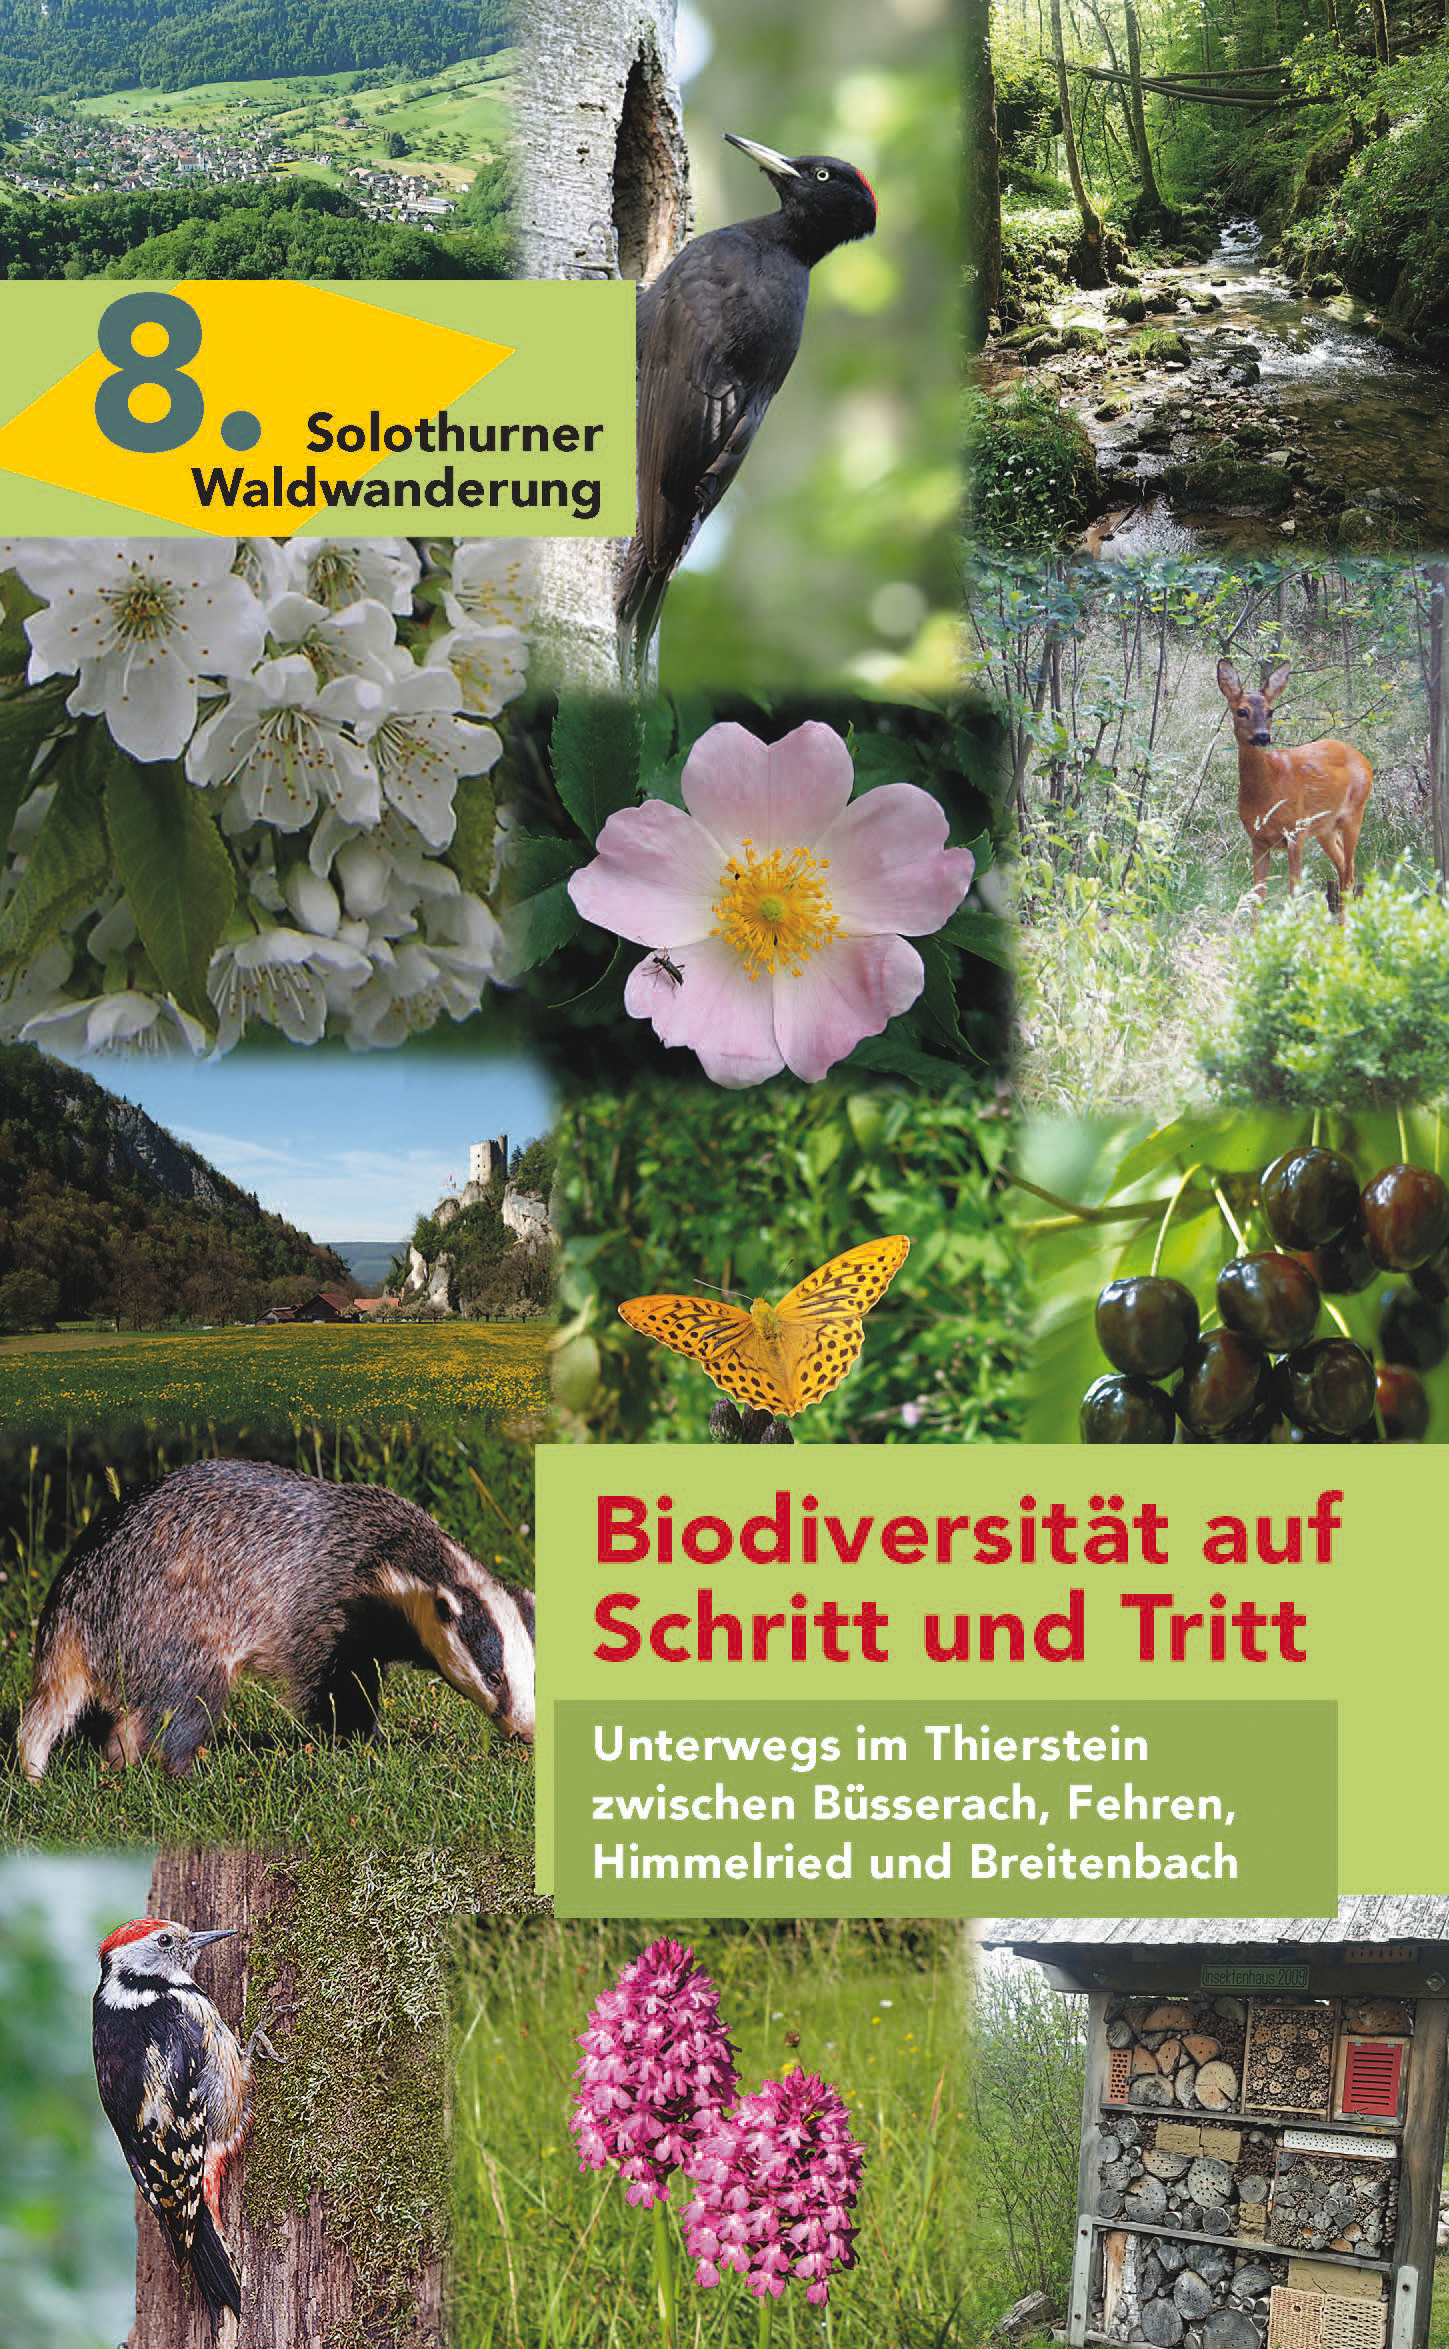 8. Biodiversität auf Schritt und Tritt